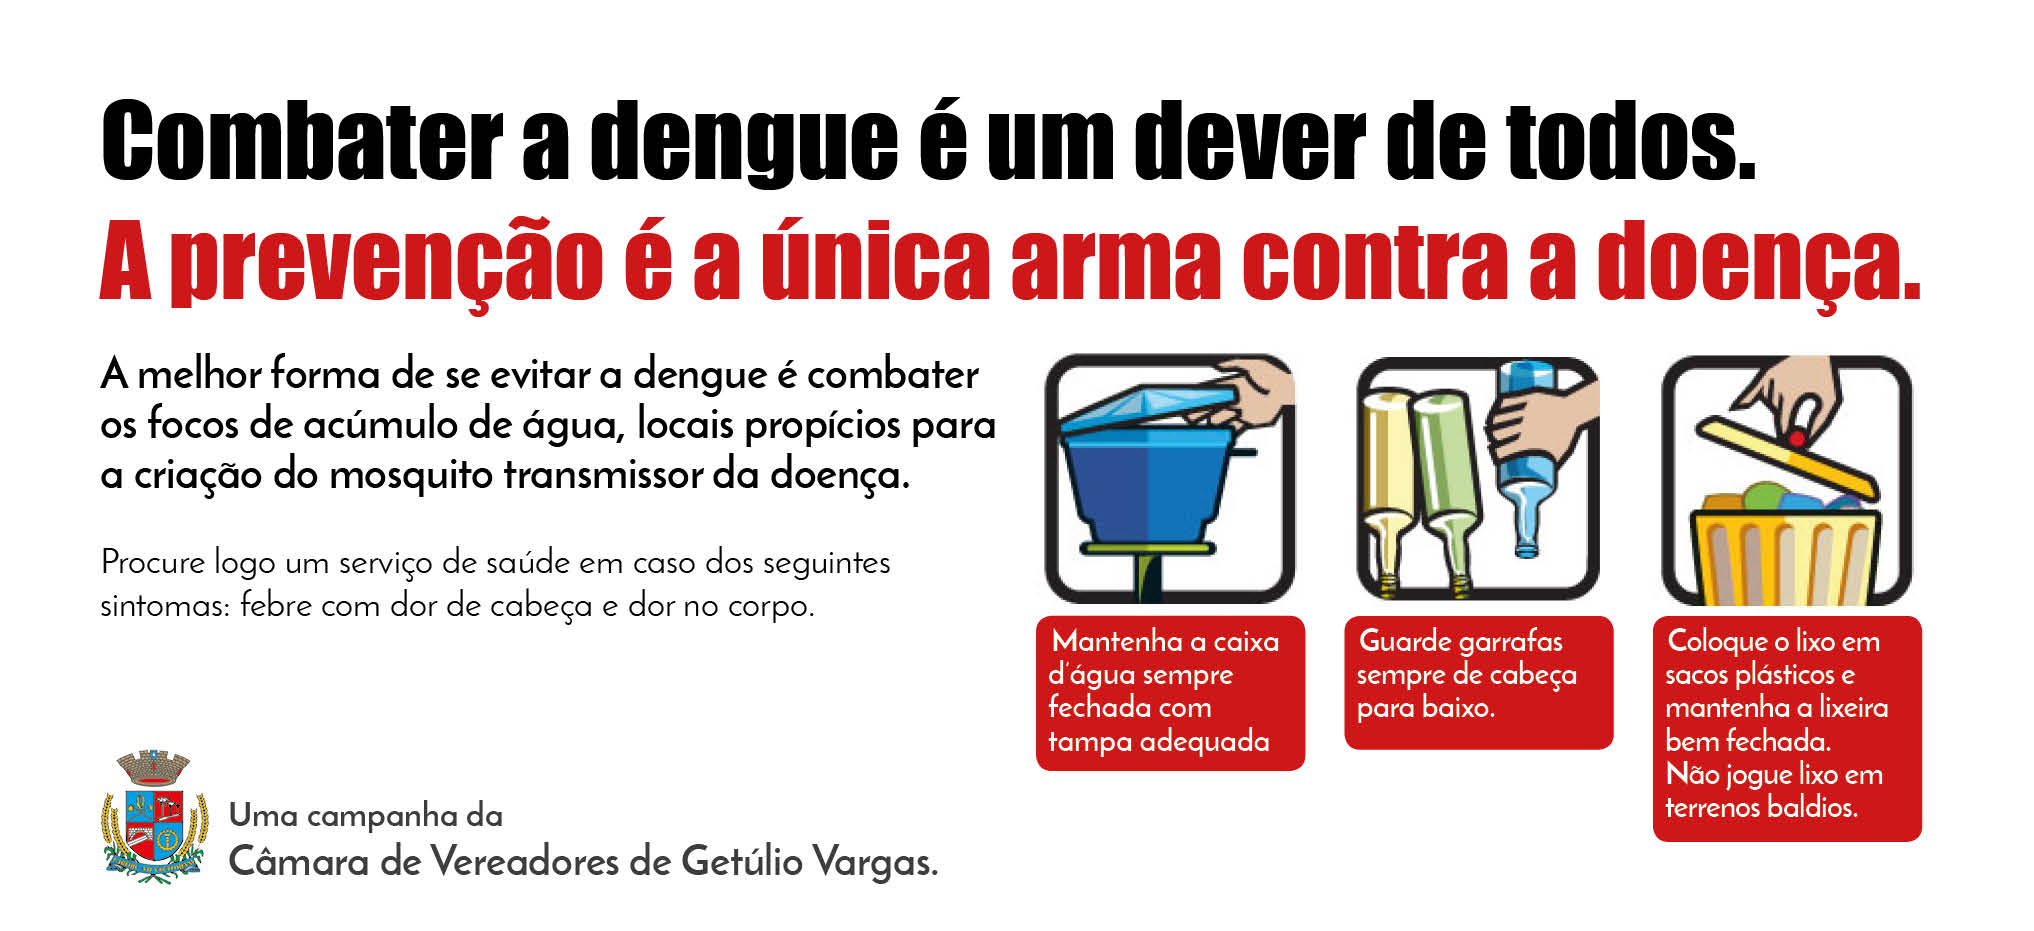 Combater a dengue é um dever de todos